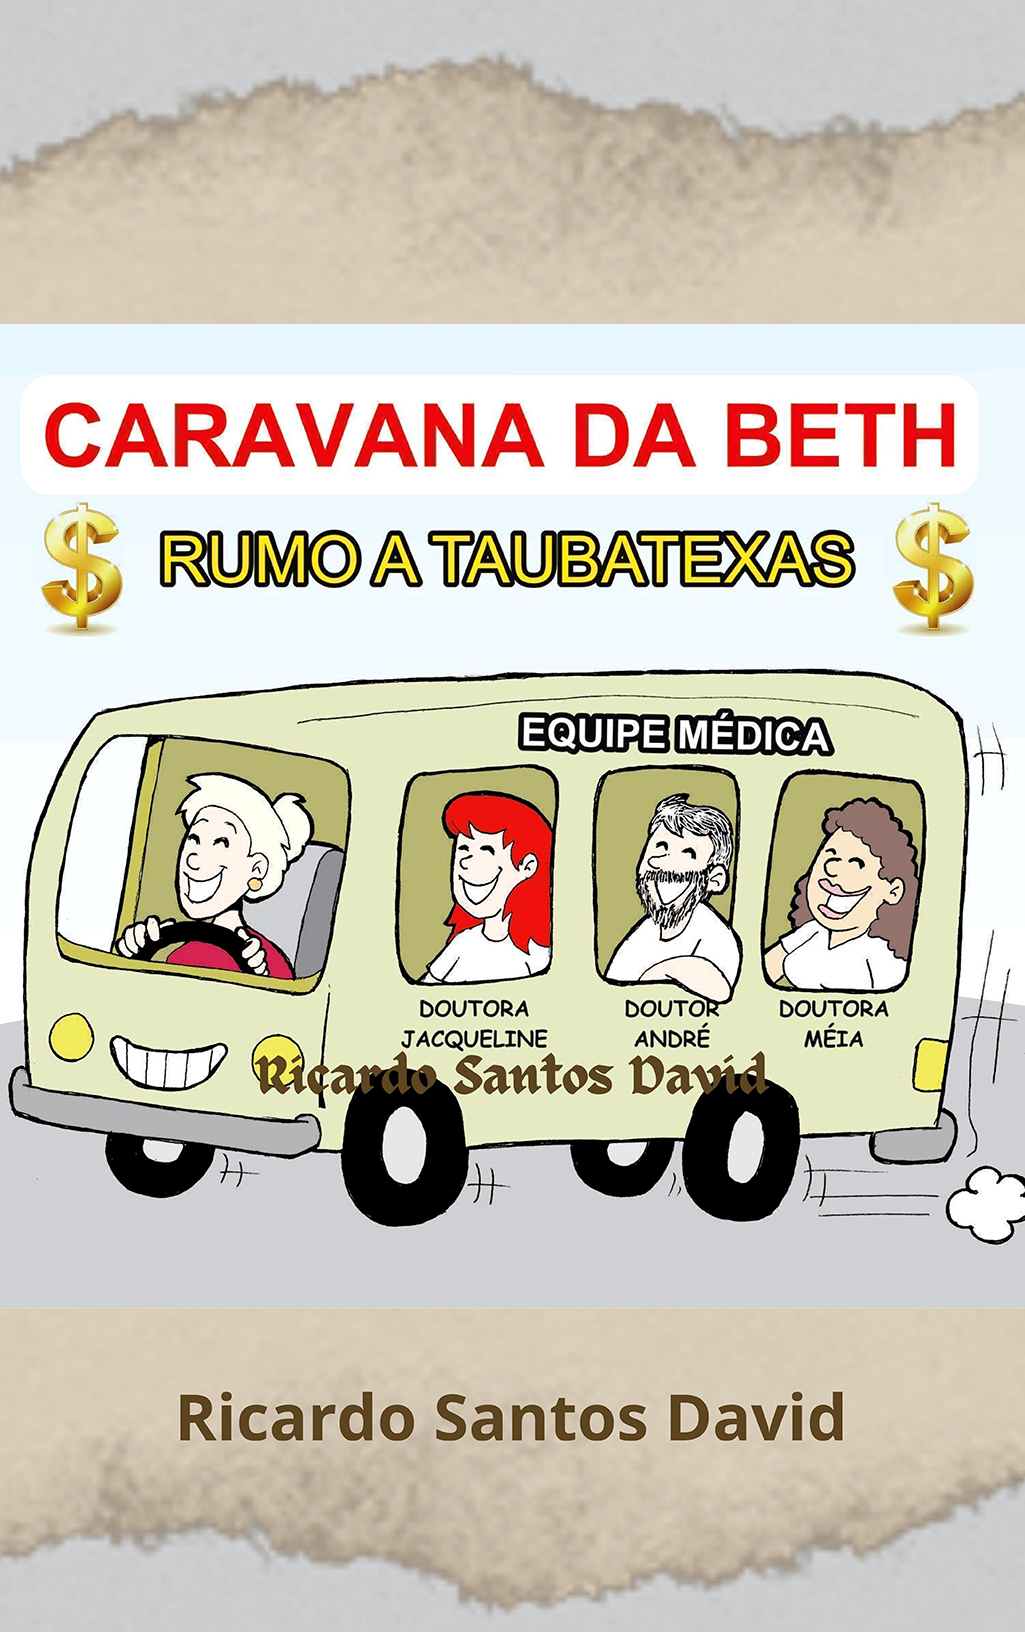 CARAVANA DA BETH